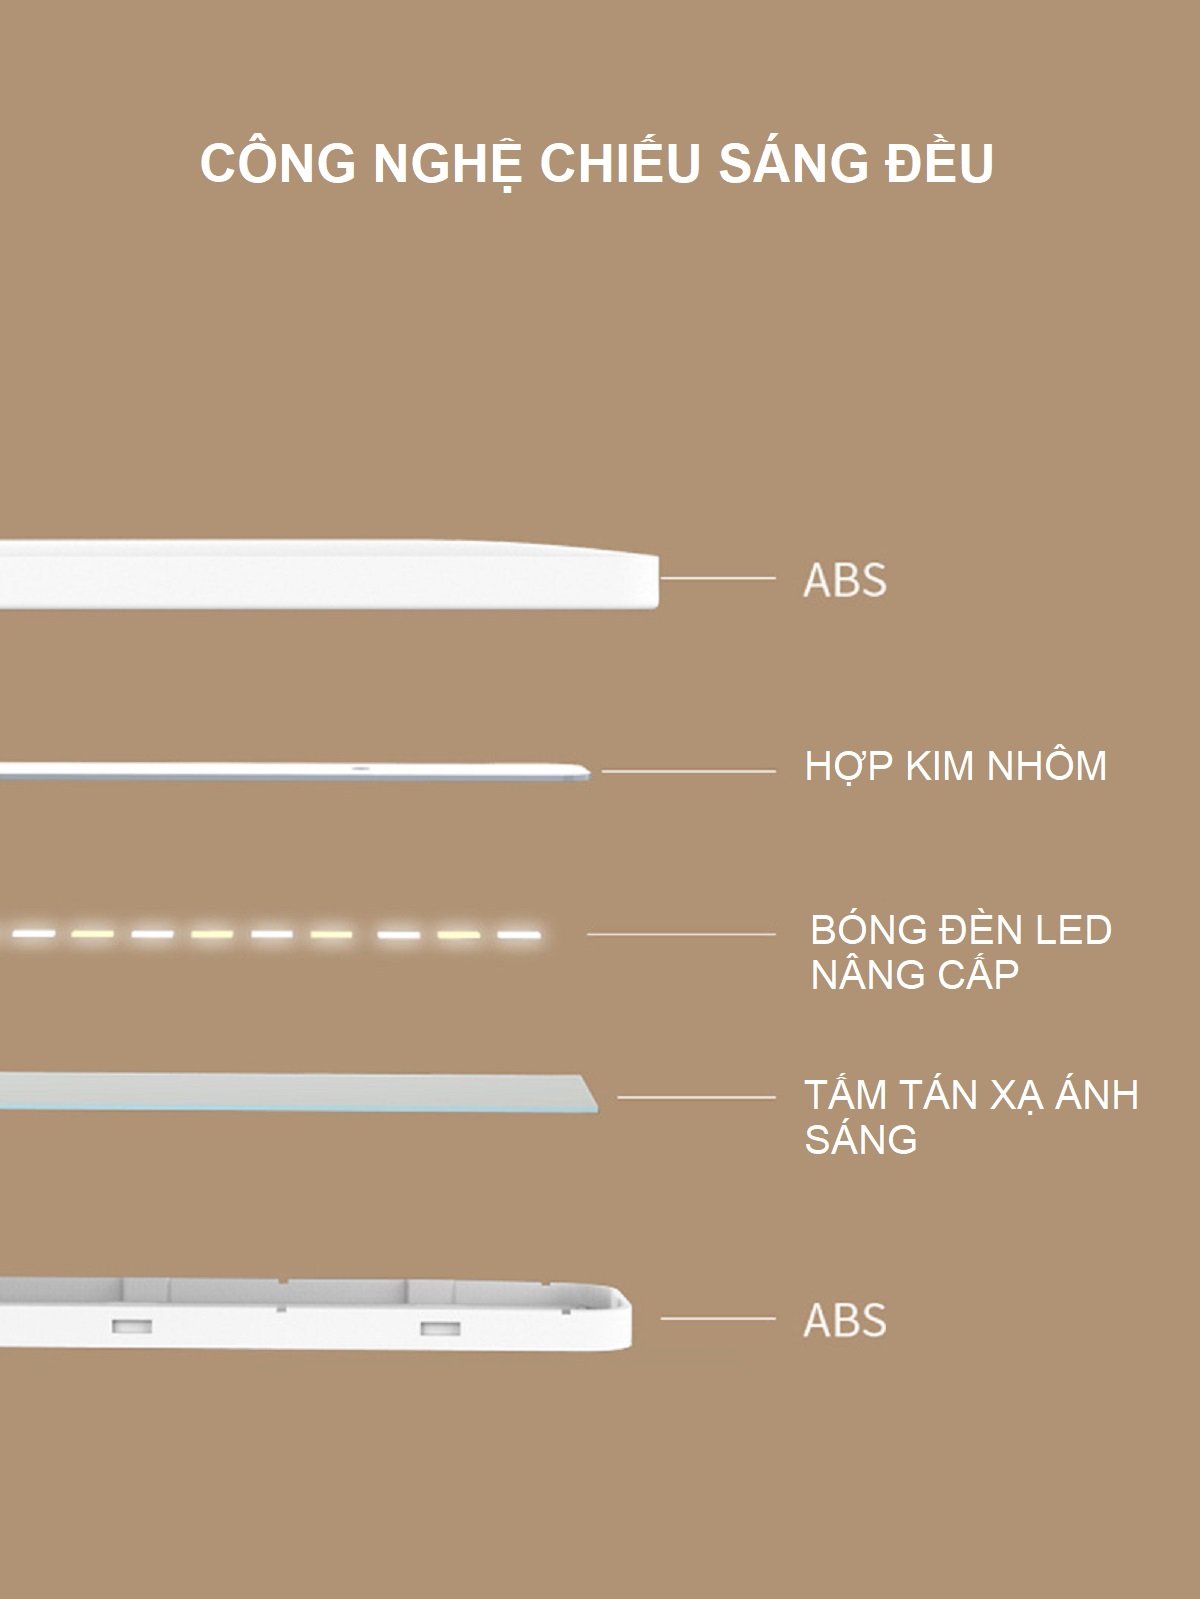 Đèn Bàn Học LED USB Di Động Cao Cấp Có Thể Gập Hai Chỗ – 03 Chế Độ Ánh Sáng Vàng Bảo Vệ Mắt Chống Cận eLights